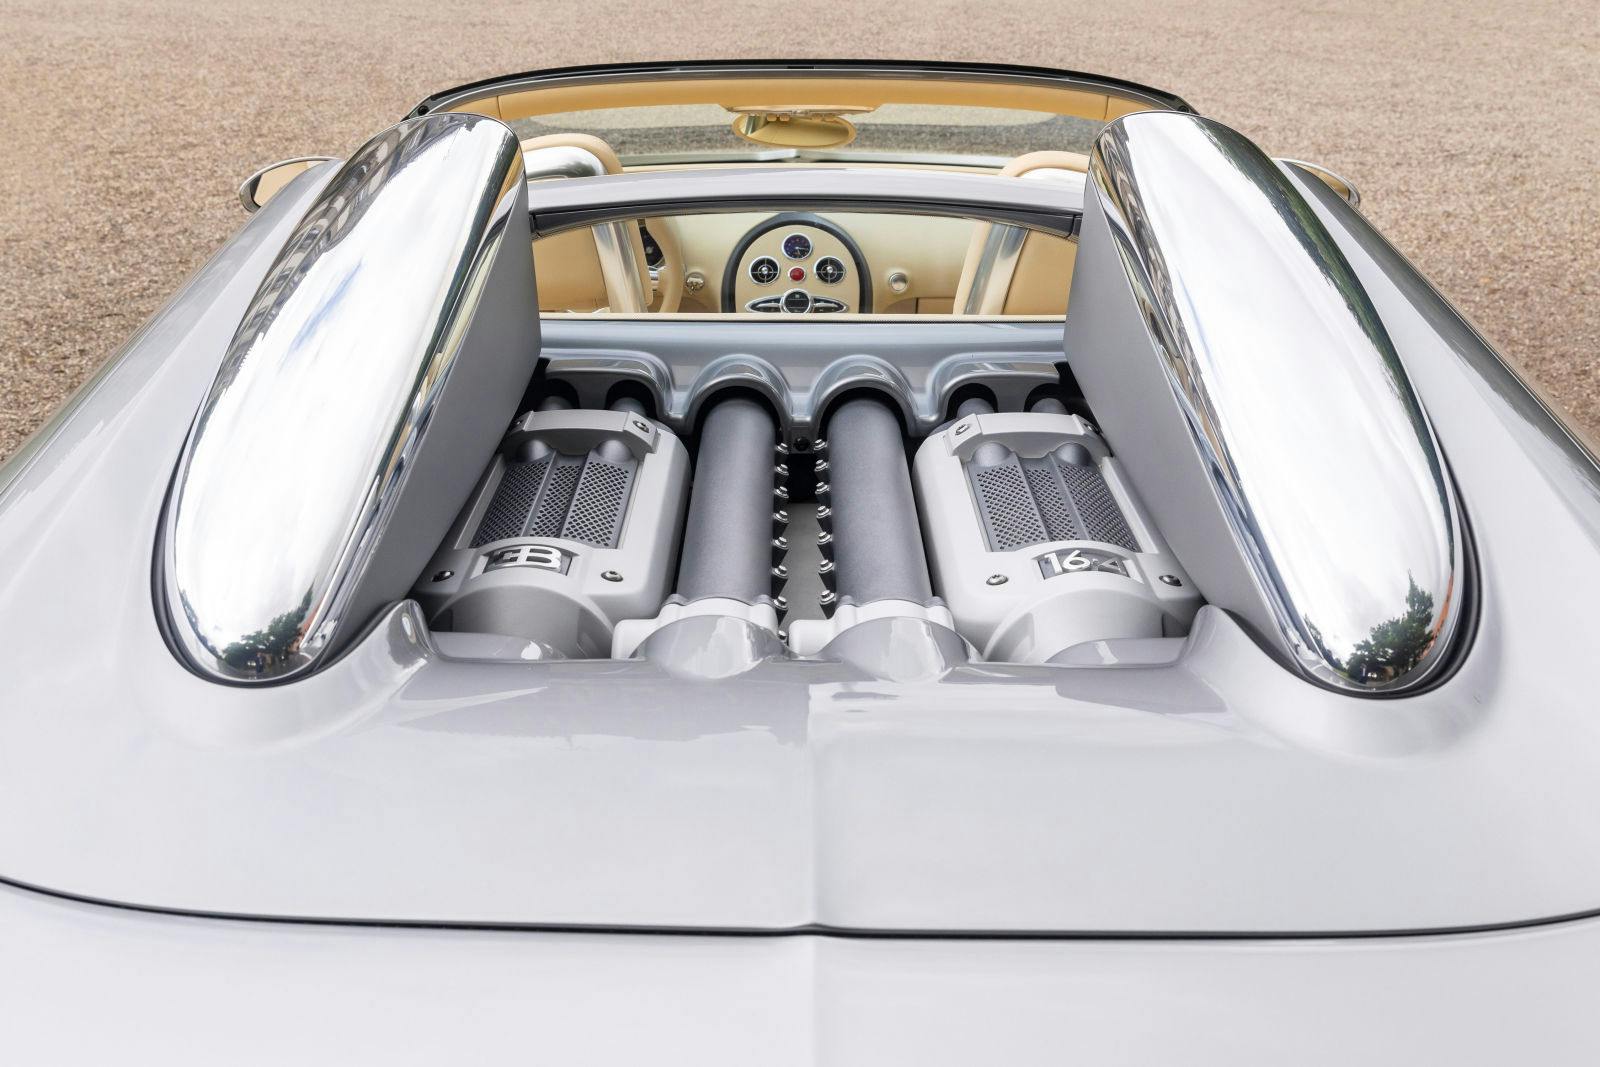 Der Veyron und sein mittlerweile legendärer W16-Motor waren ein Meisterwerk des Automobildesigns und der Ingenieurskunst, das seiner Zeit bei der Markteinführung im Jahr 2005 um Lichtjahre voraus war. 